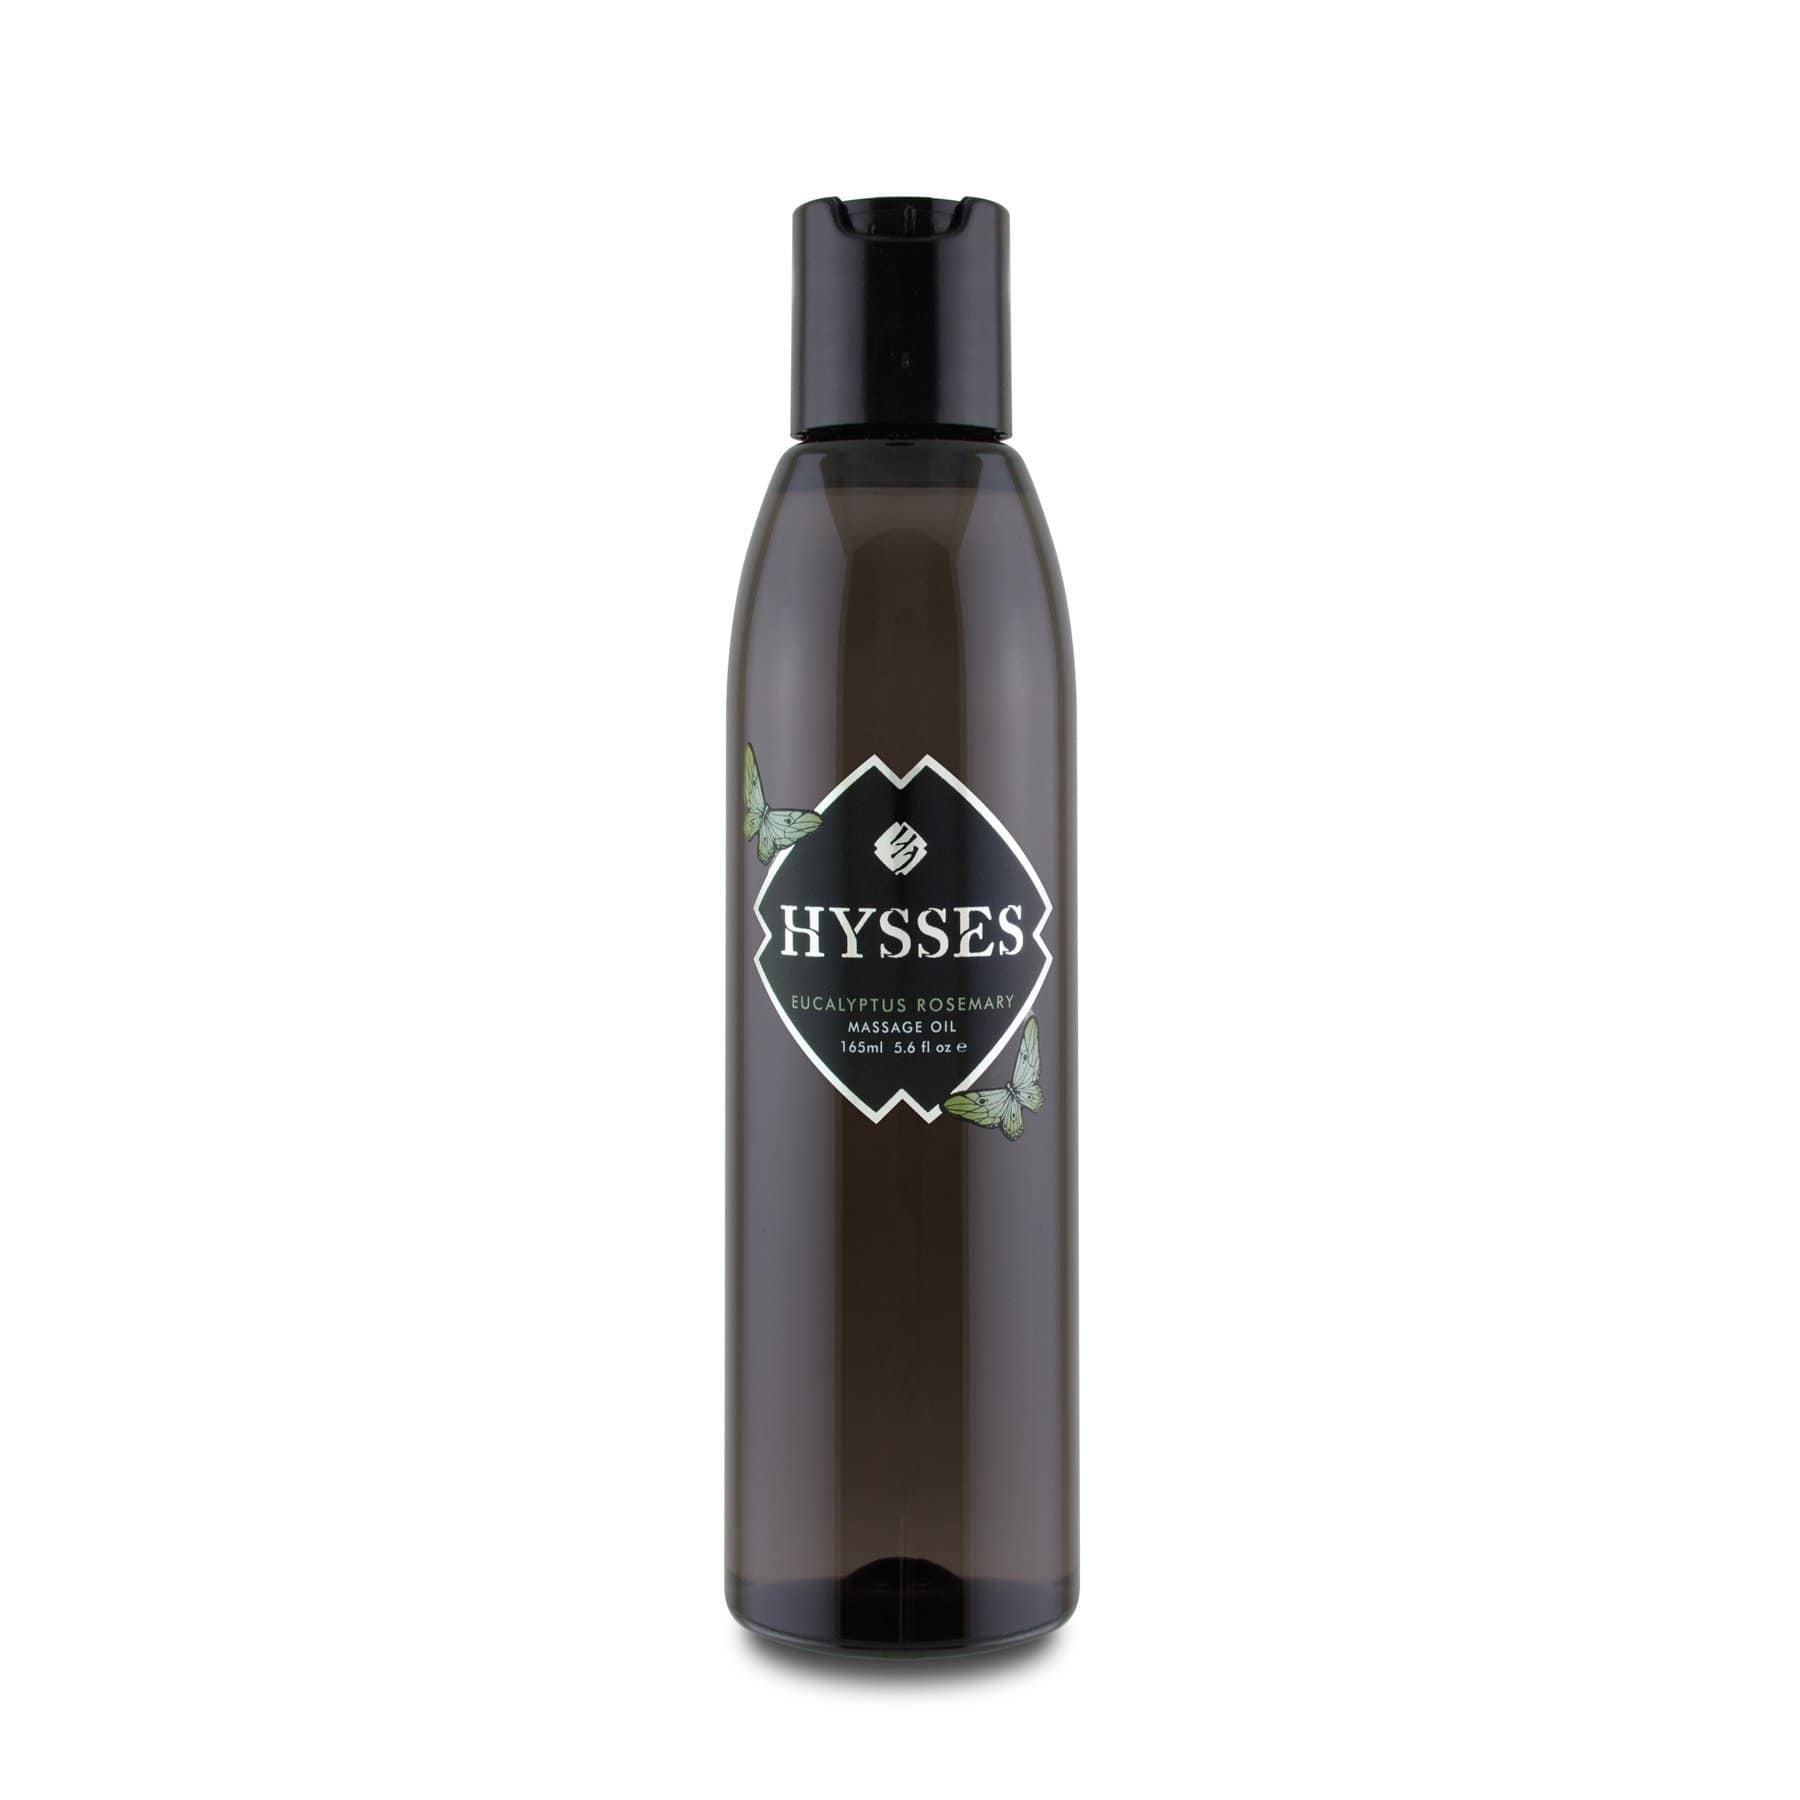 Hysses Body Care Massage Oil Eucalyptus Rosemary, 165ml